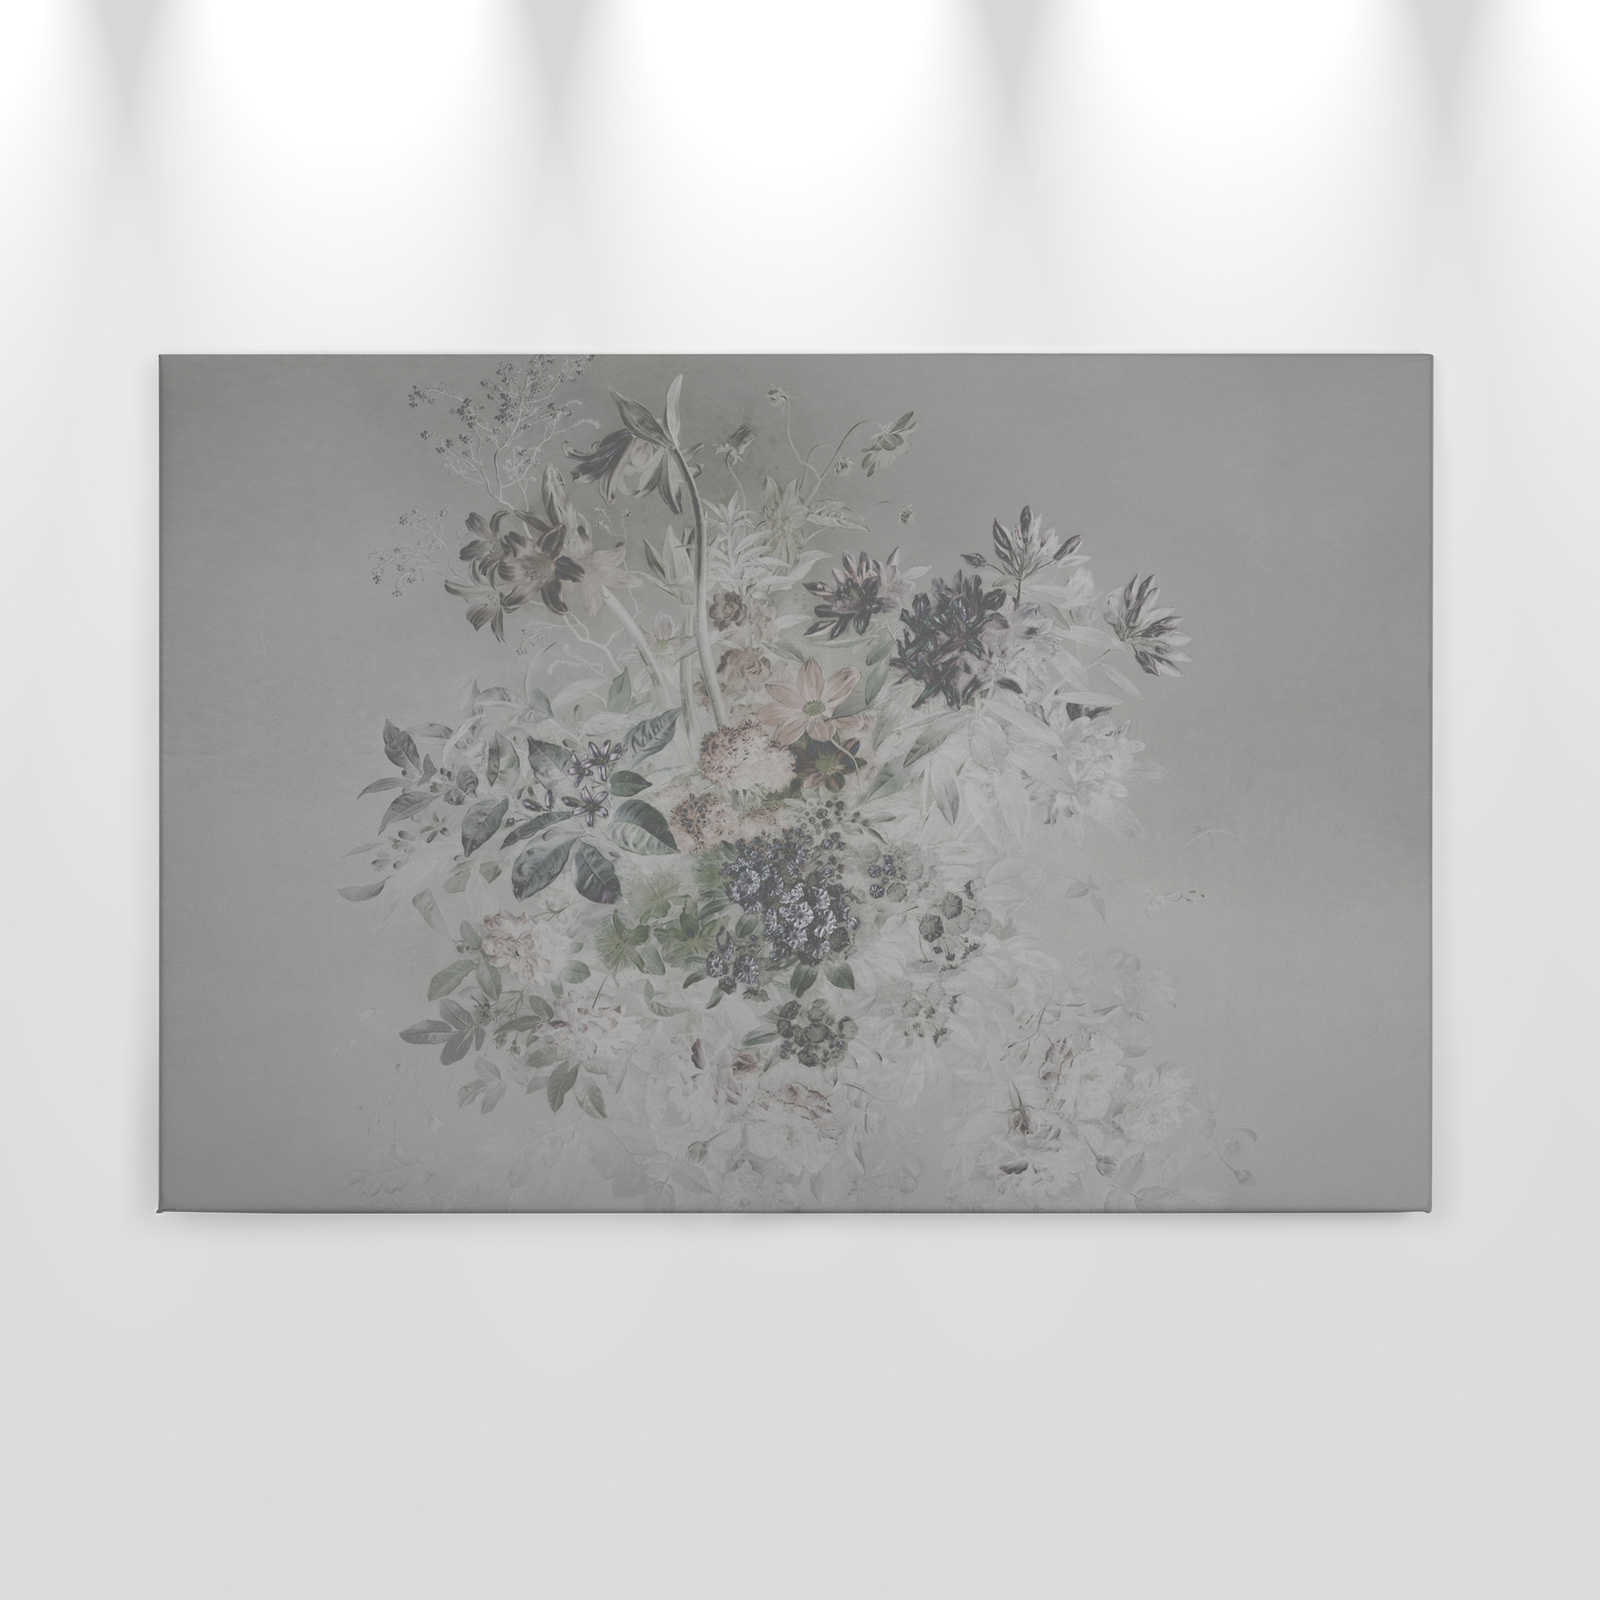             Canvas painting romantic flowers design - 0,90 m x 0,60 m
        